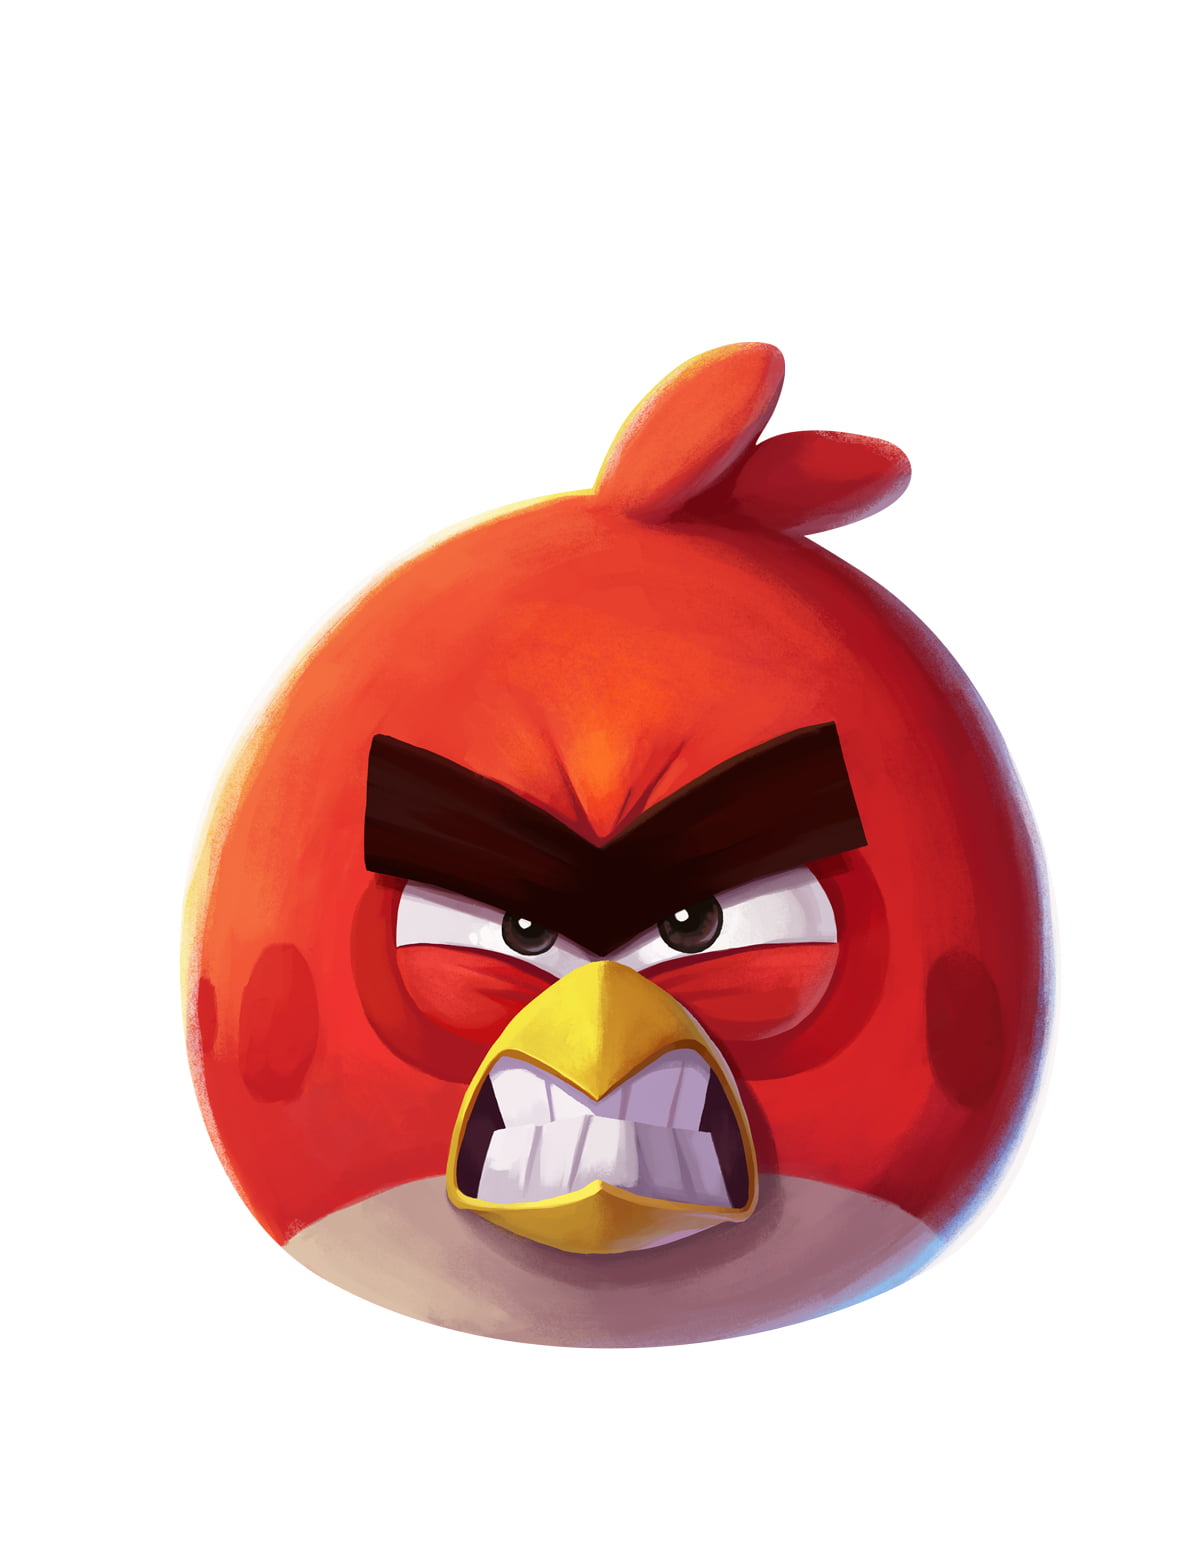 und-weiter-gehts-angry-birds-2-ist-erschienen-mac-egg